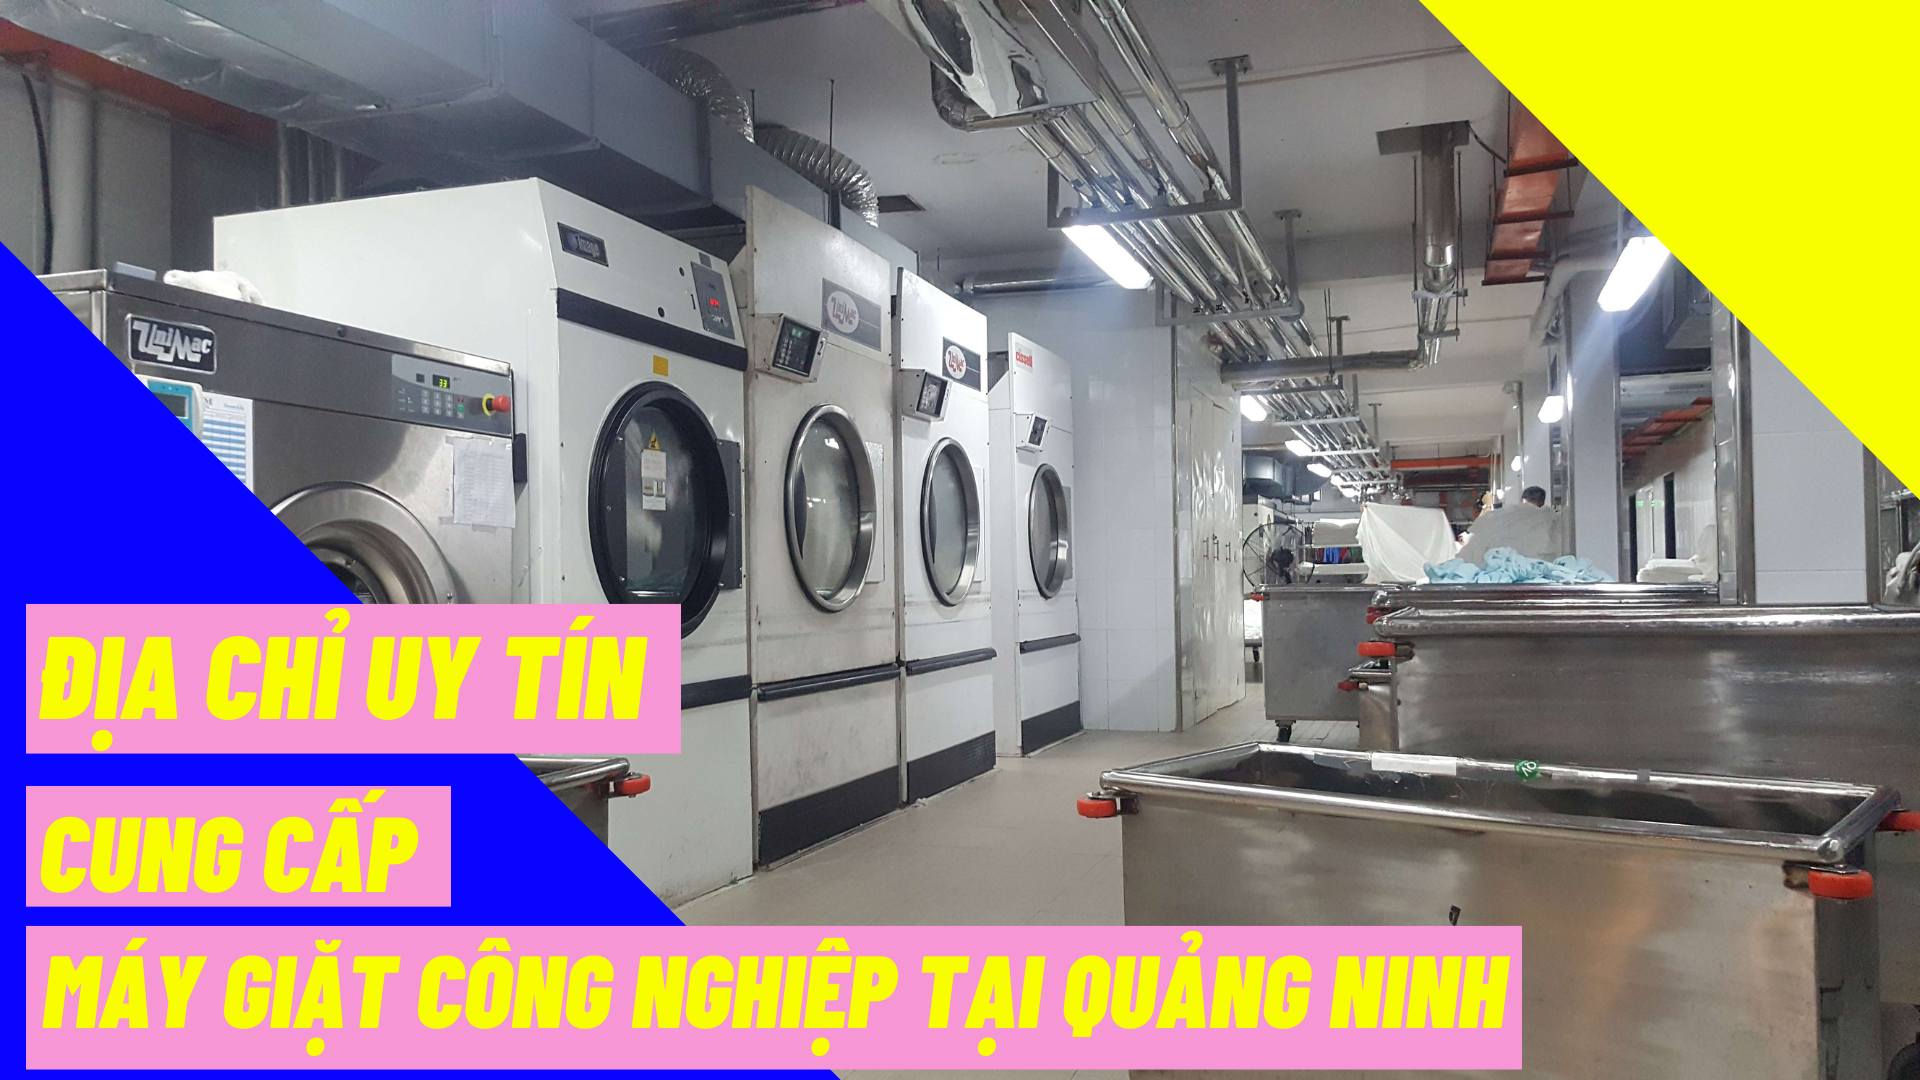 Địa chỉ uy tín cung cấp máy giặt công nghiệp tại Quảng Ninh